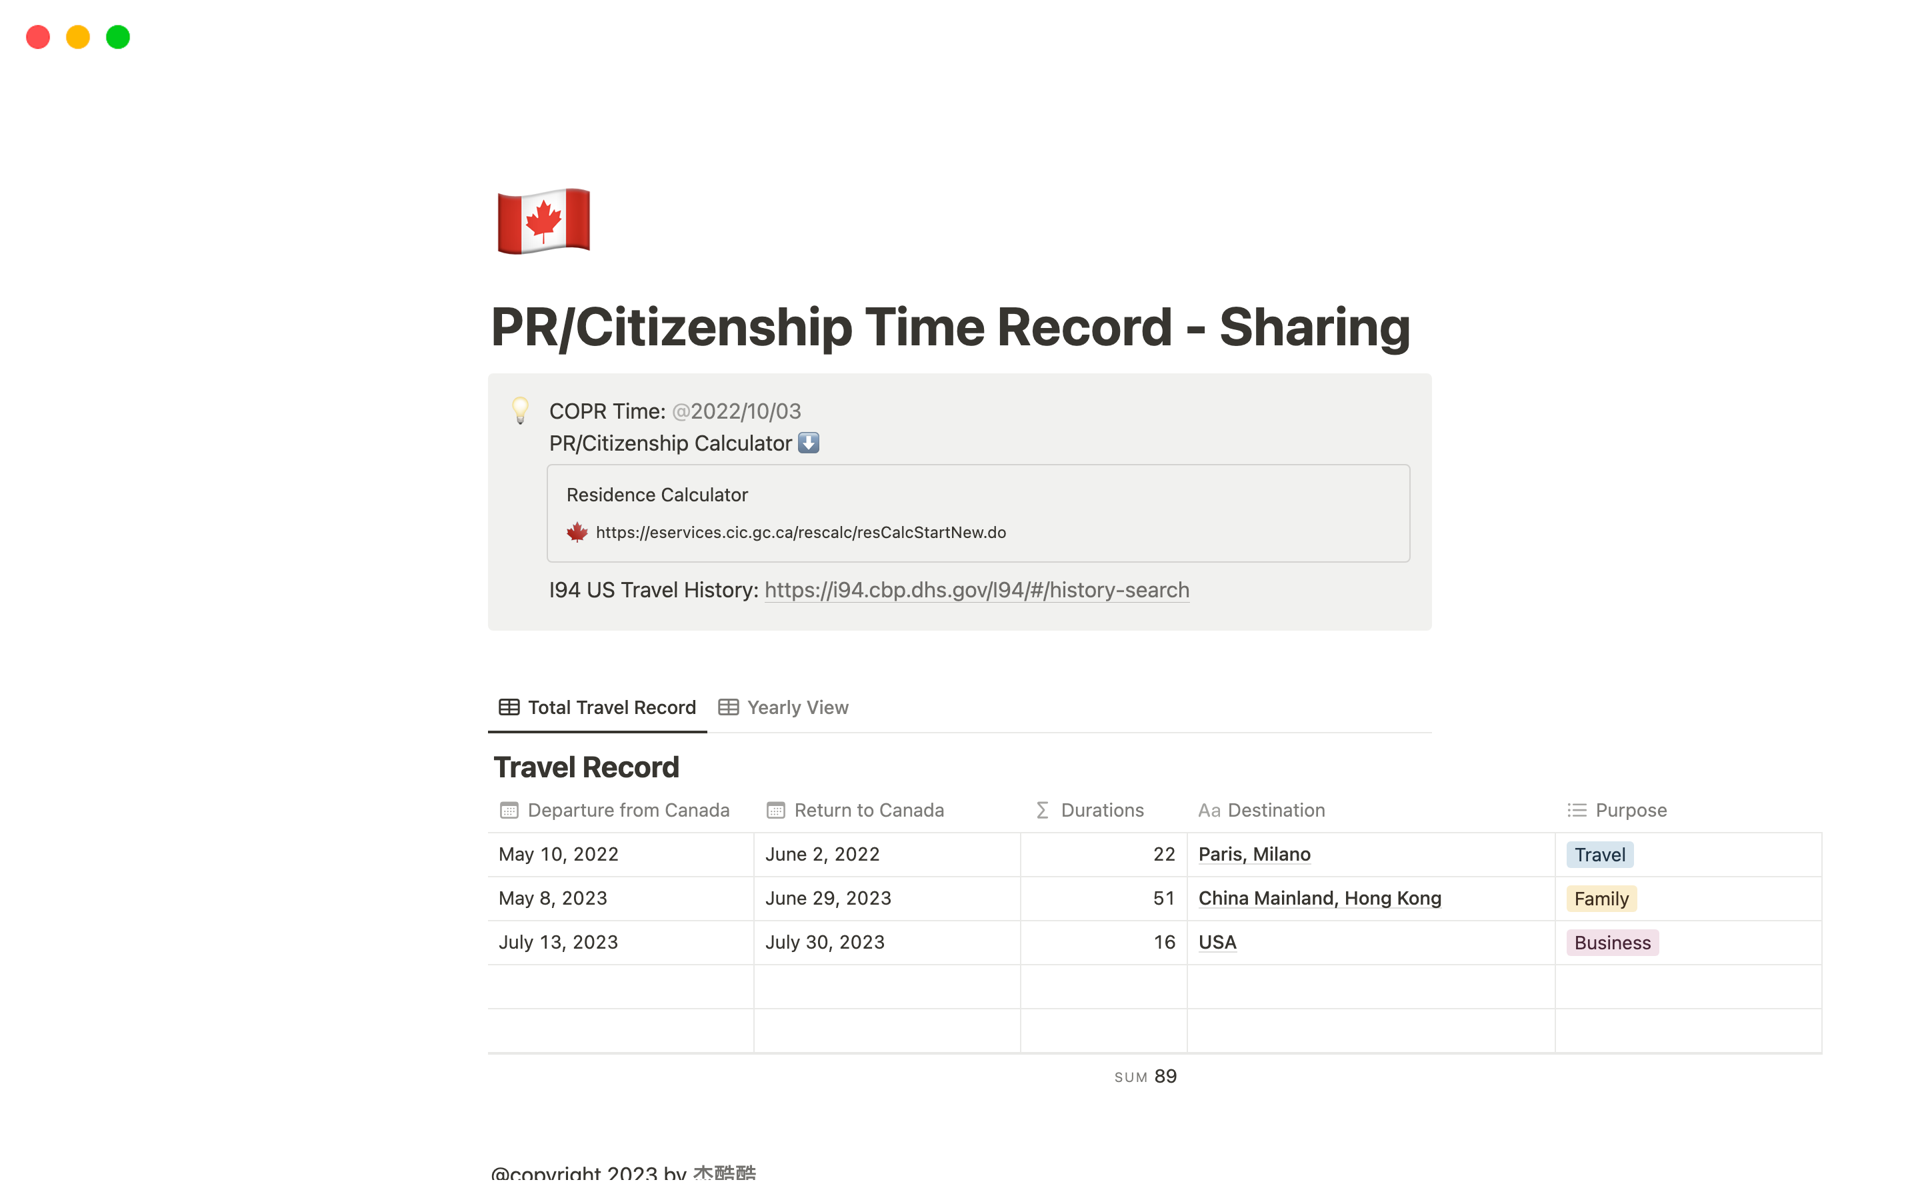 Vista previa de plantilla para Canadian PR/Citizenship Time Record